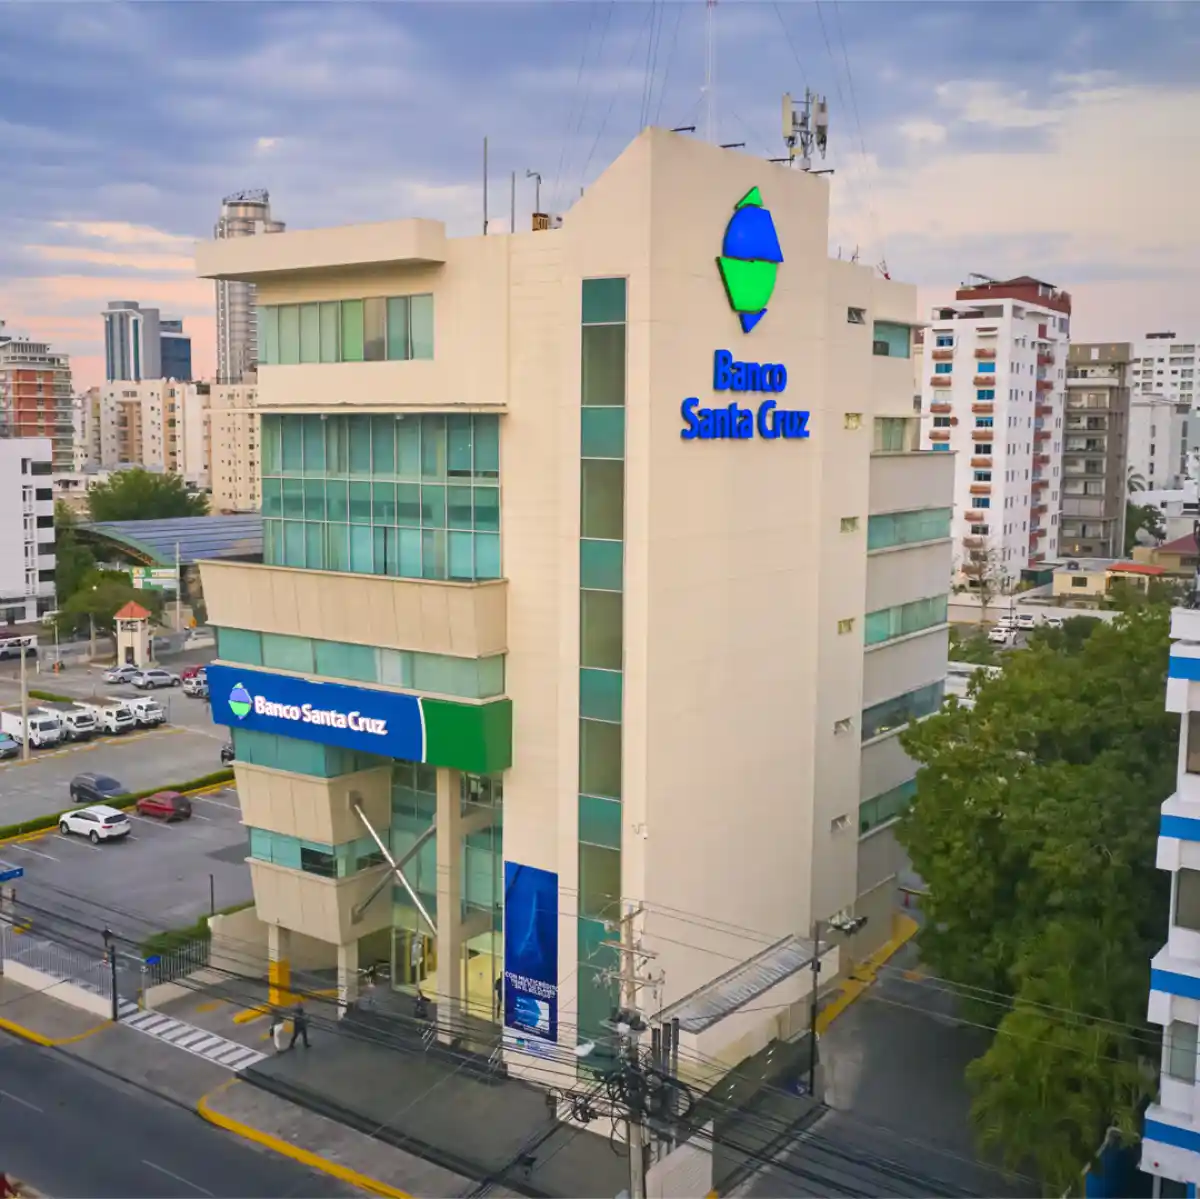 Banco Santa Cruz: